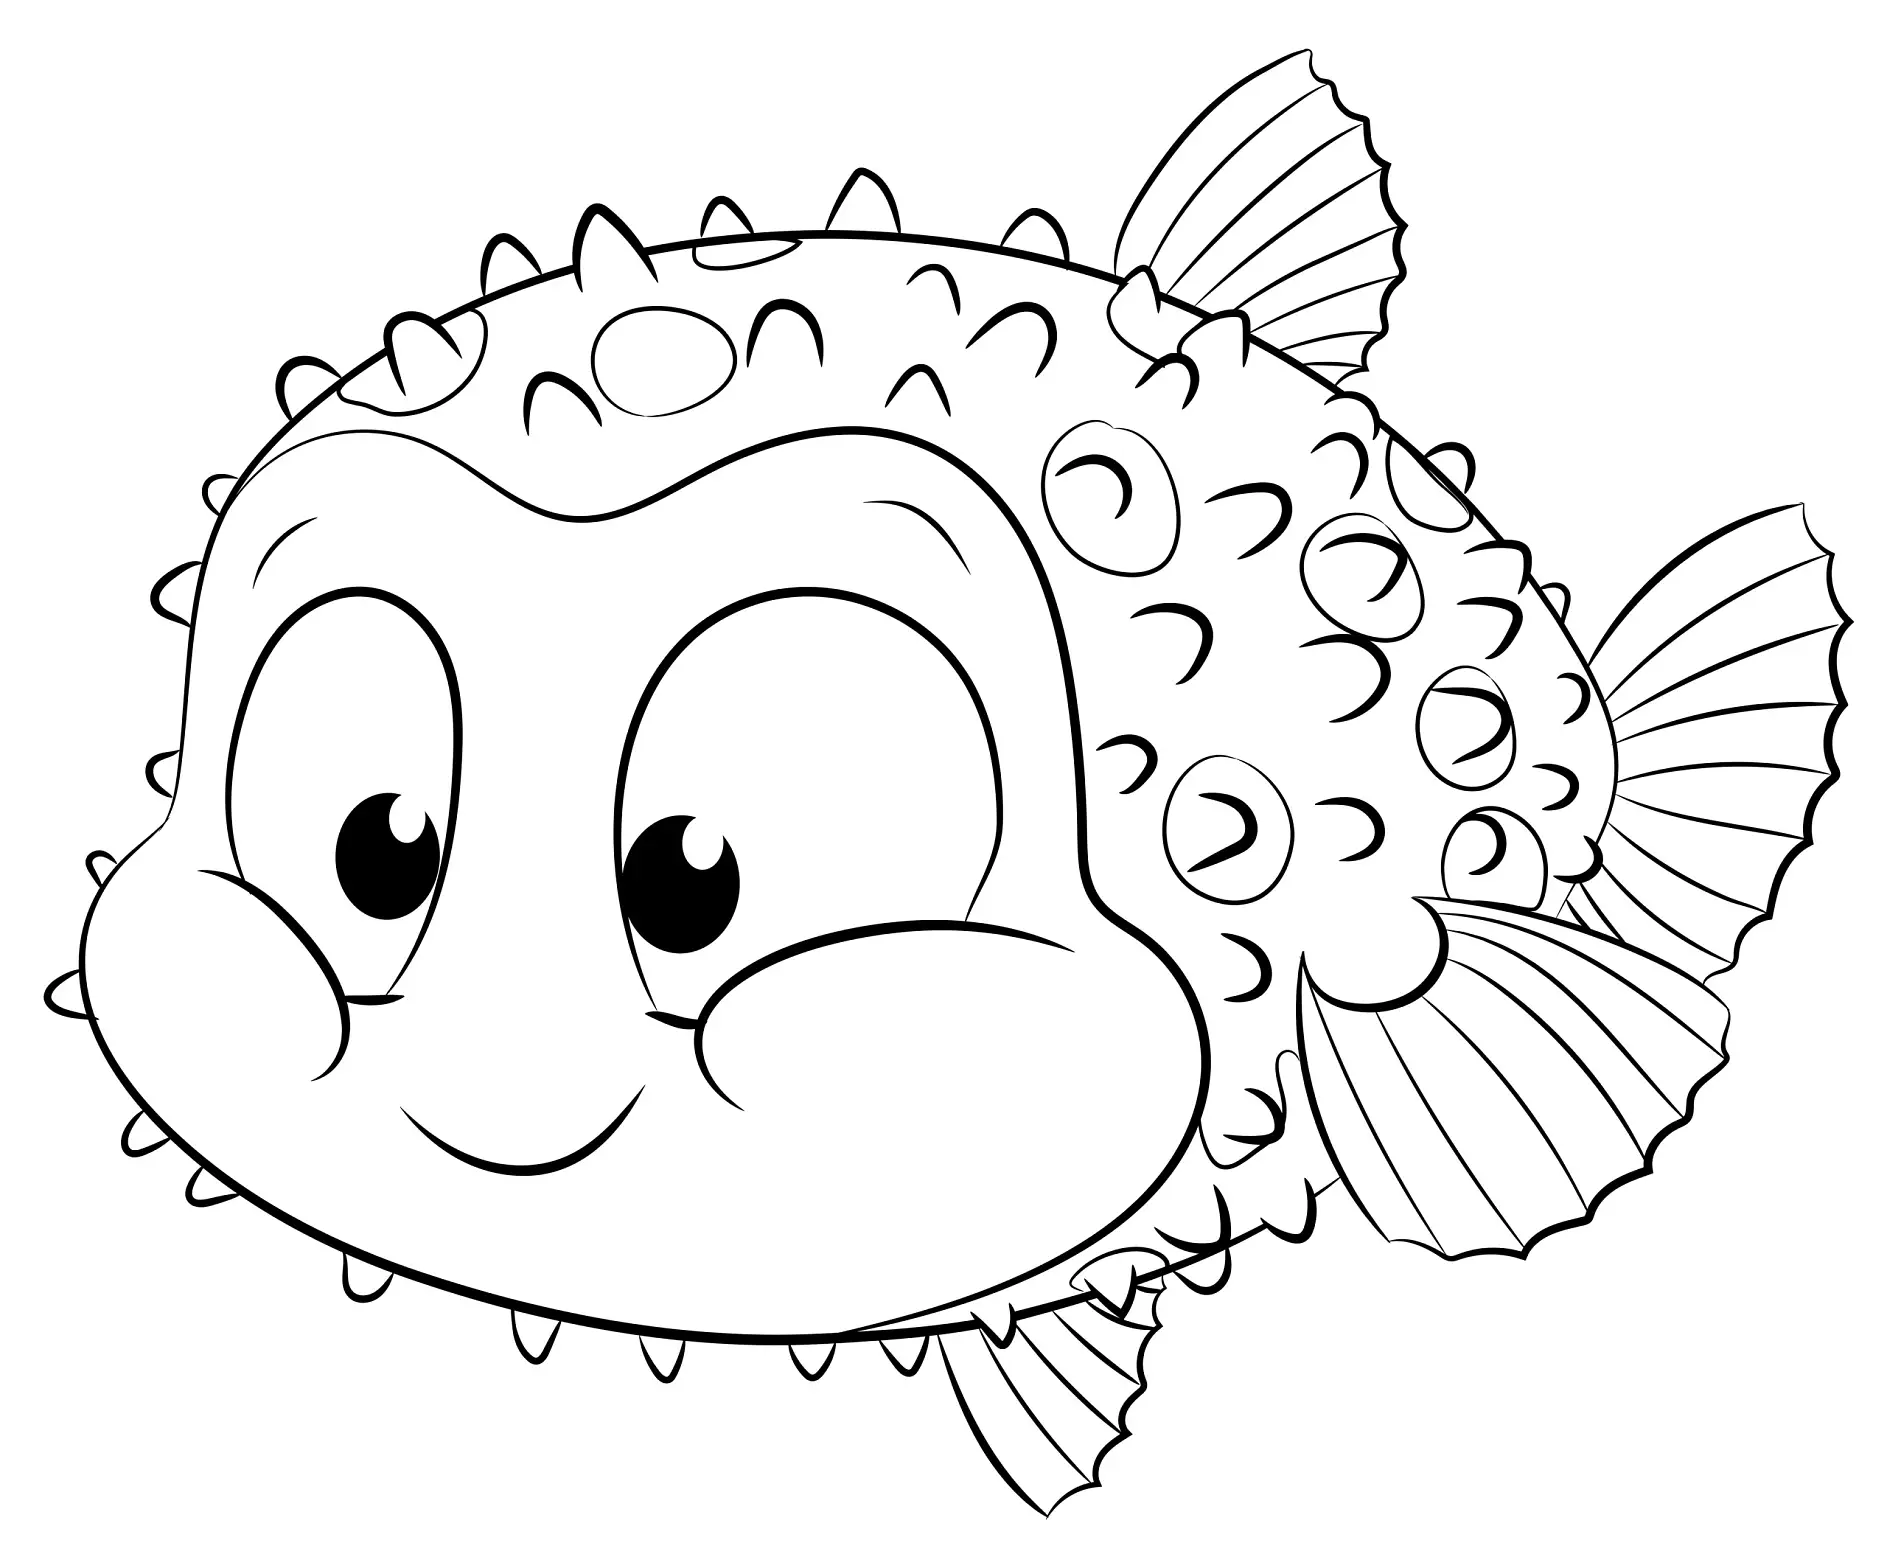 Ausmalbild Fisch mit großen Augen und lächelndem Gesicht